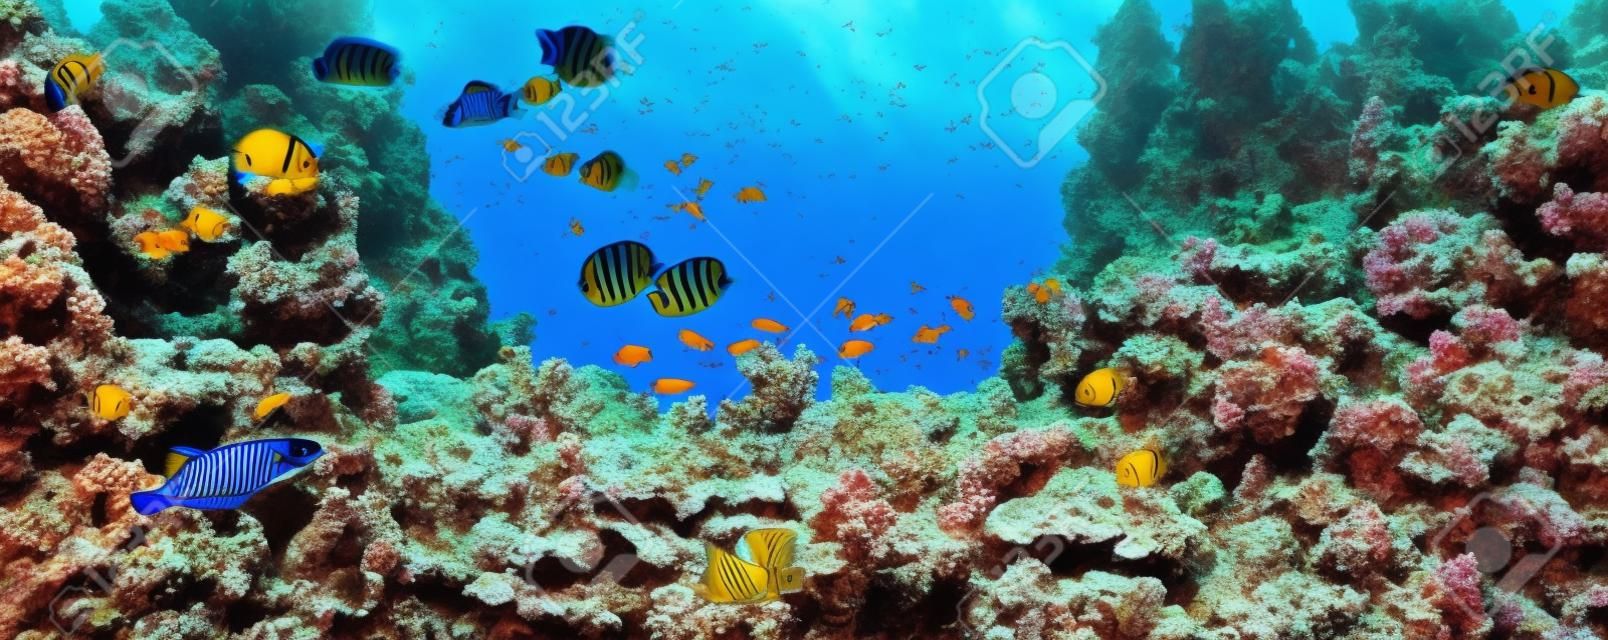 Vlindervissen in de natuurlijke omgeving. Onderwater kleurrijke vissen bij koraalrif op Rode Zee. Blauw water in Ras Muhammad National Park in Sinaï, Egypte